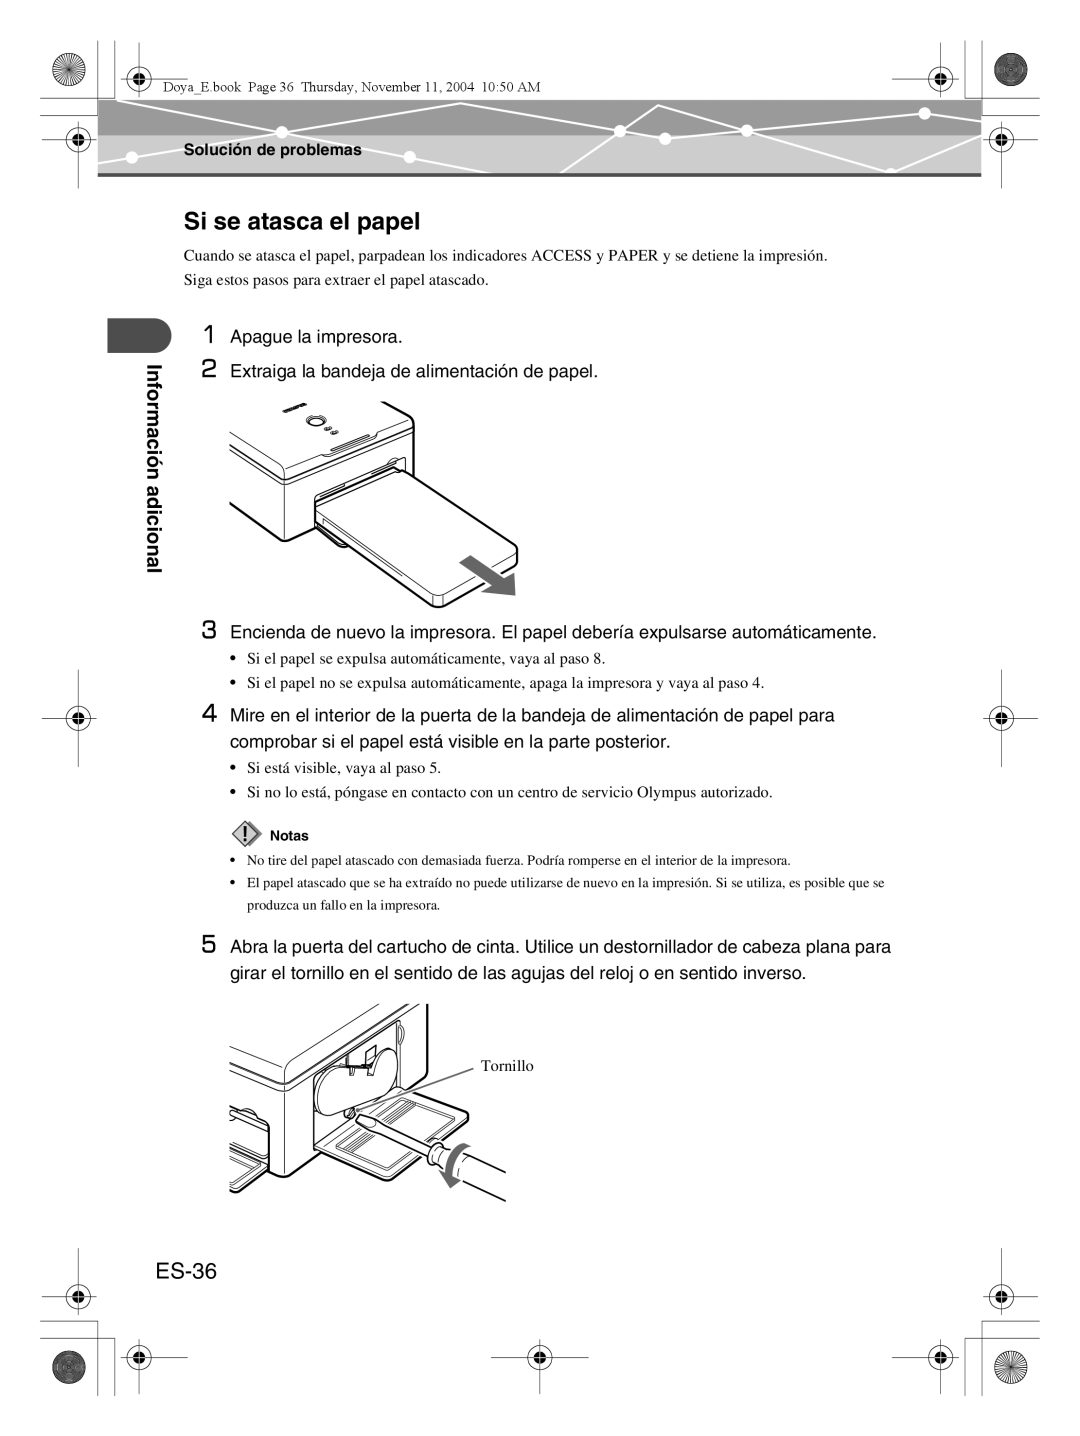 Olympus P-S100 user manual Si se atasca el papel, ES-36, Información adicional 